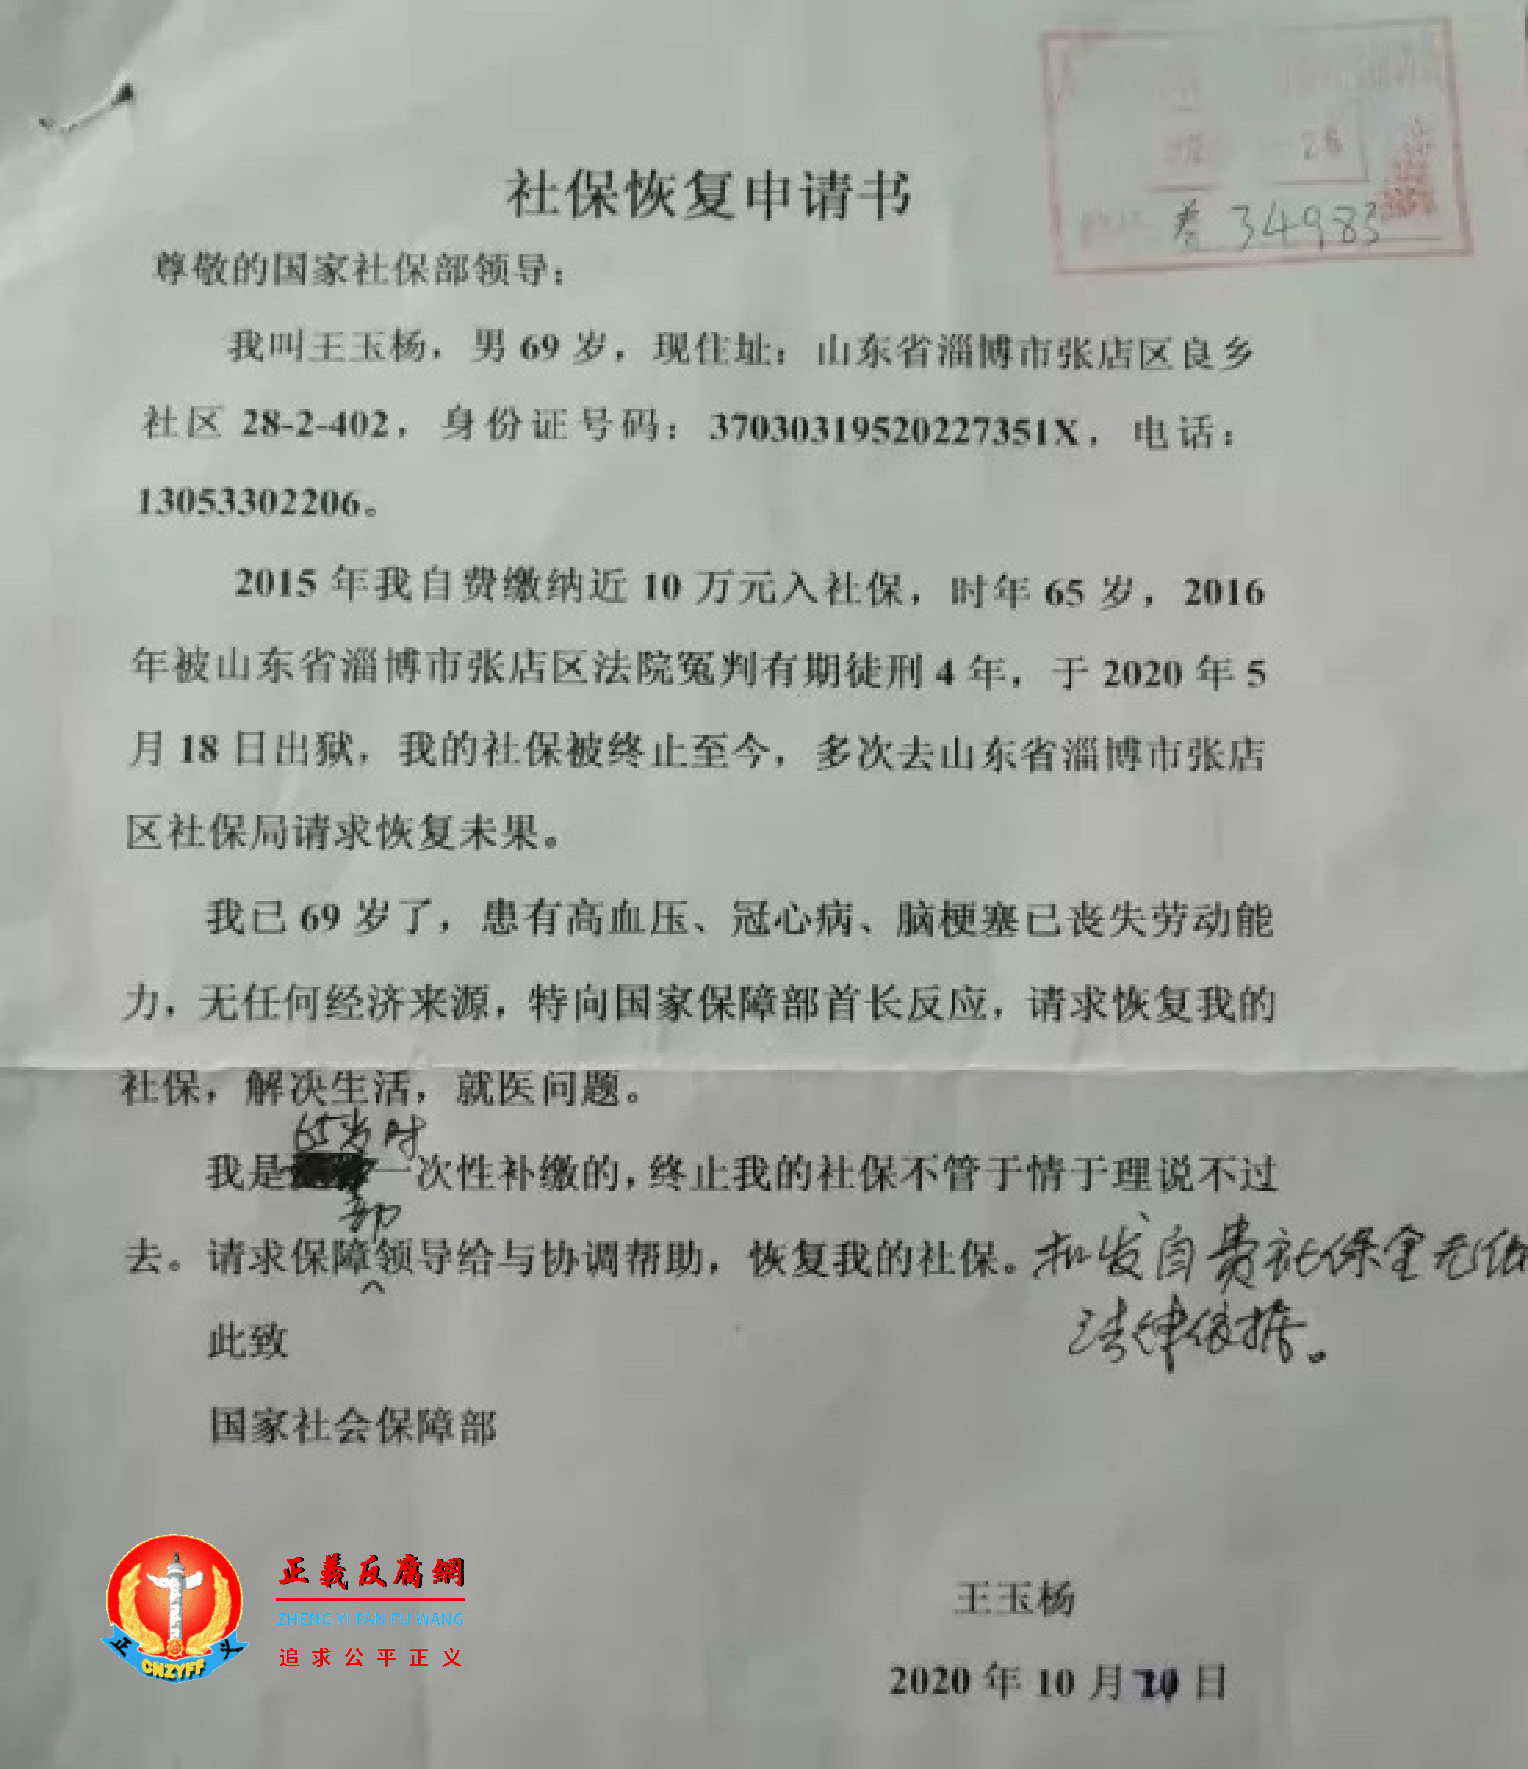 王玉杨向国家社会保障部提交《社保恢复申请书》，社保部备案盖章养34983号转交地方处理。.png